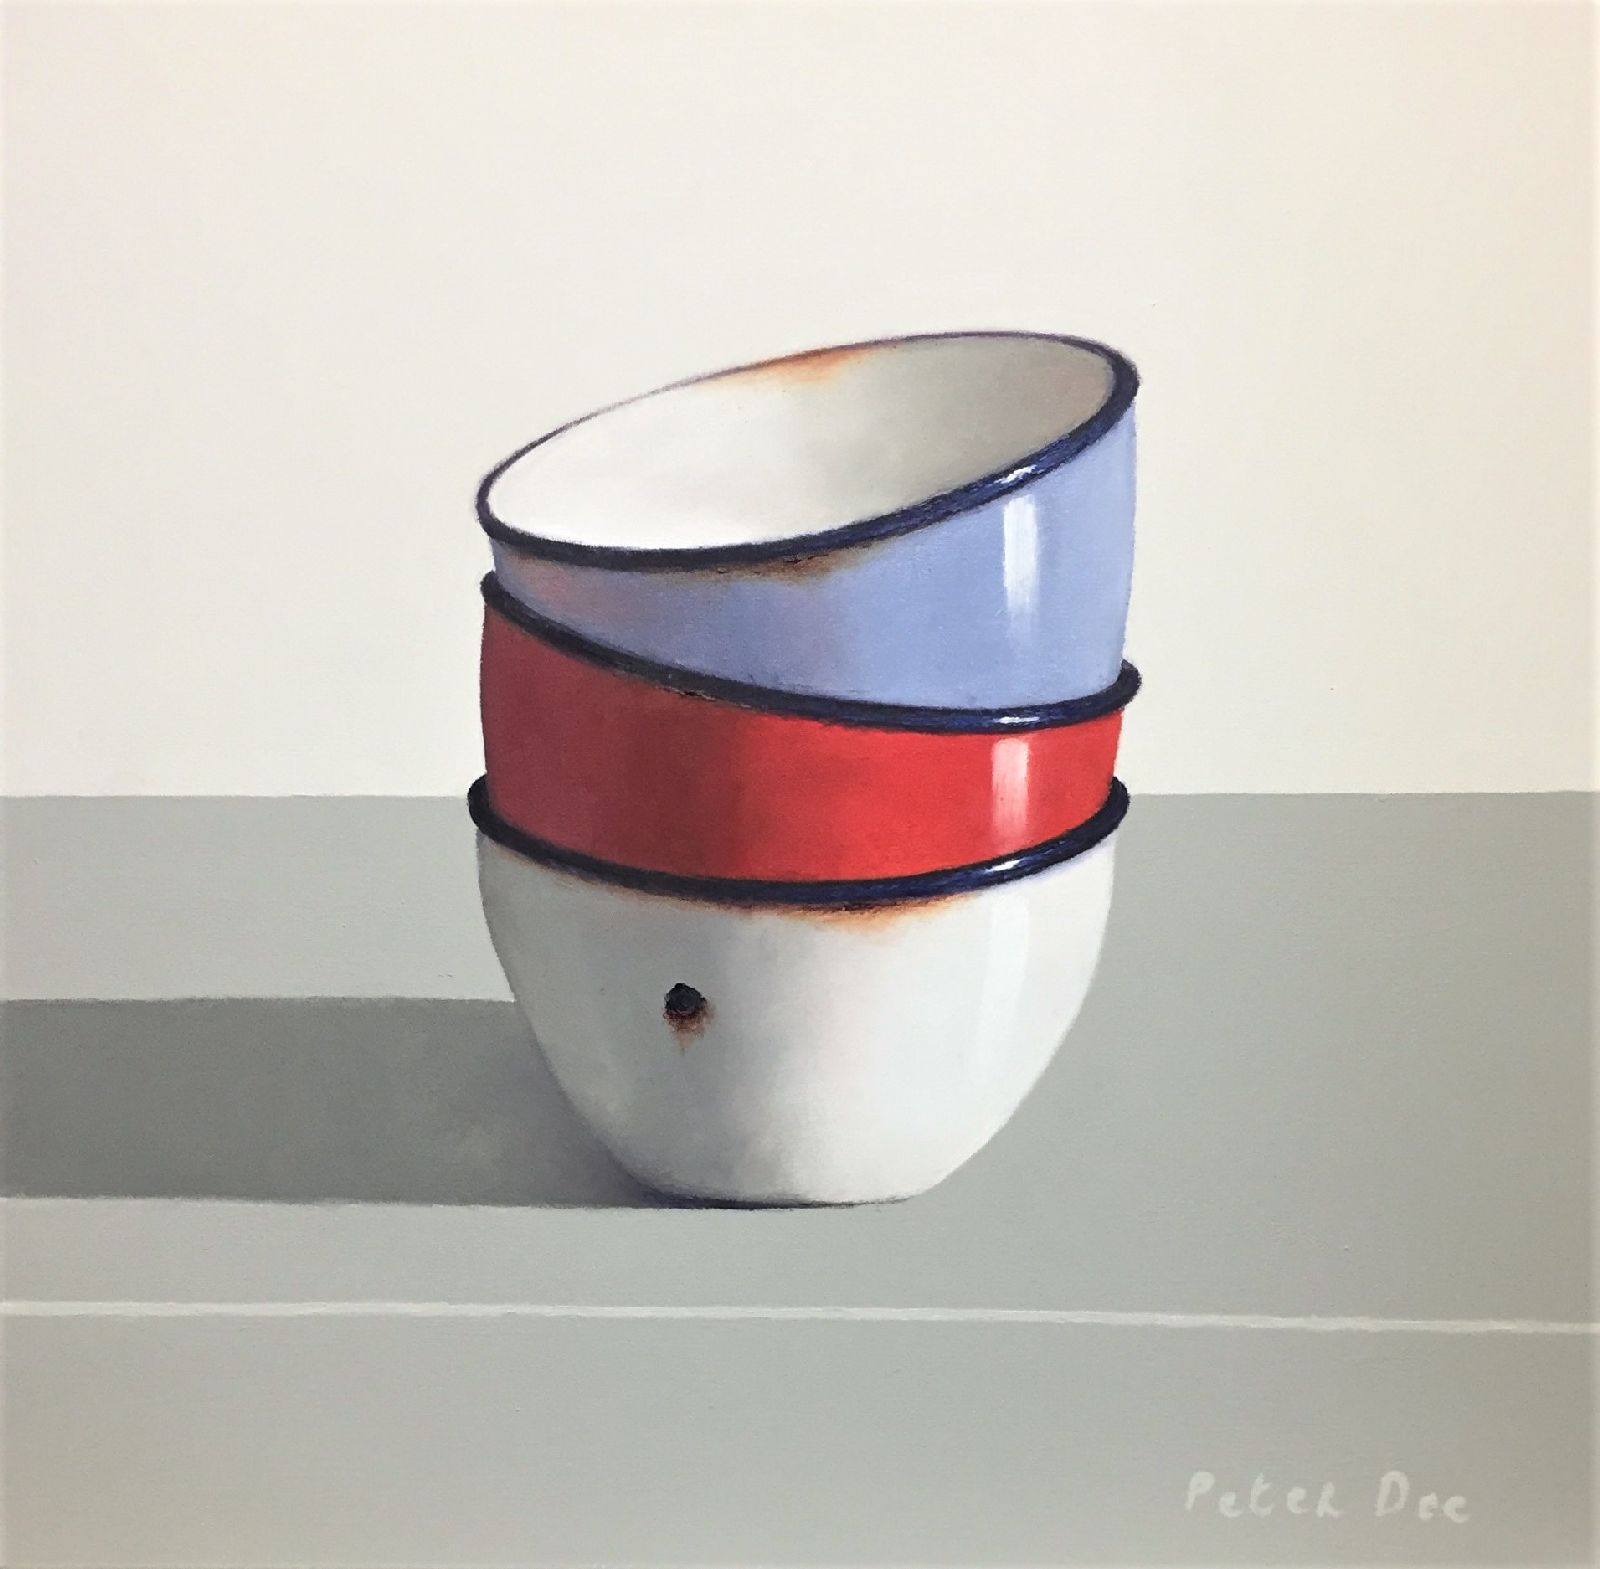 Peter Dee - Three Vintage Enamel Bowls